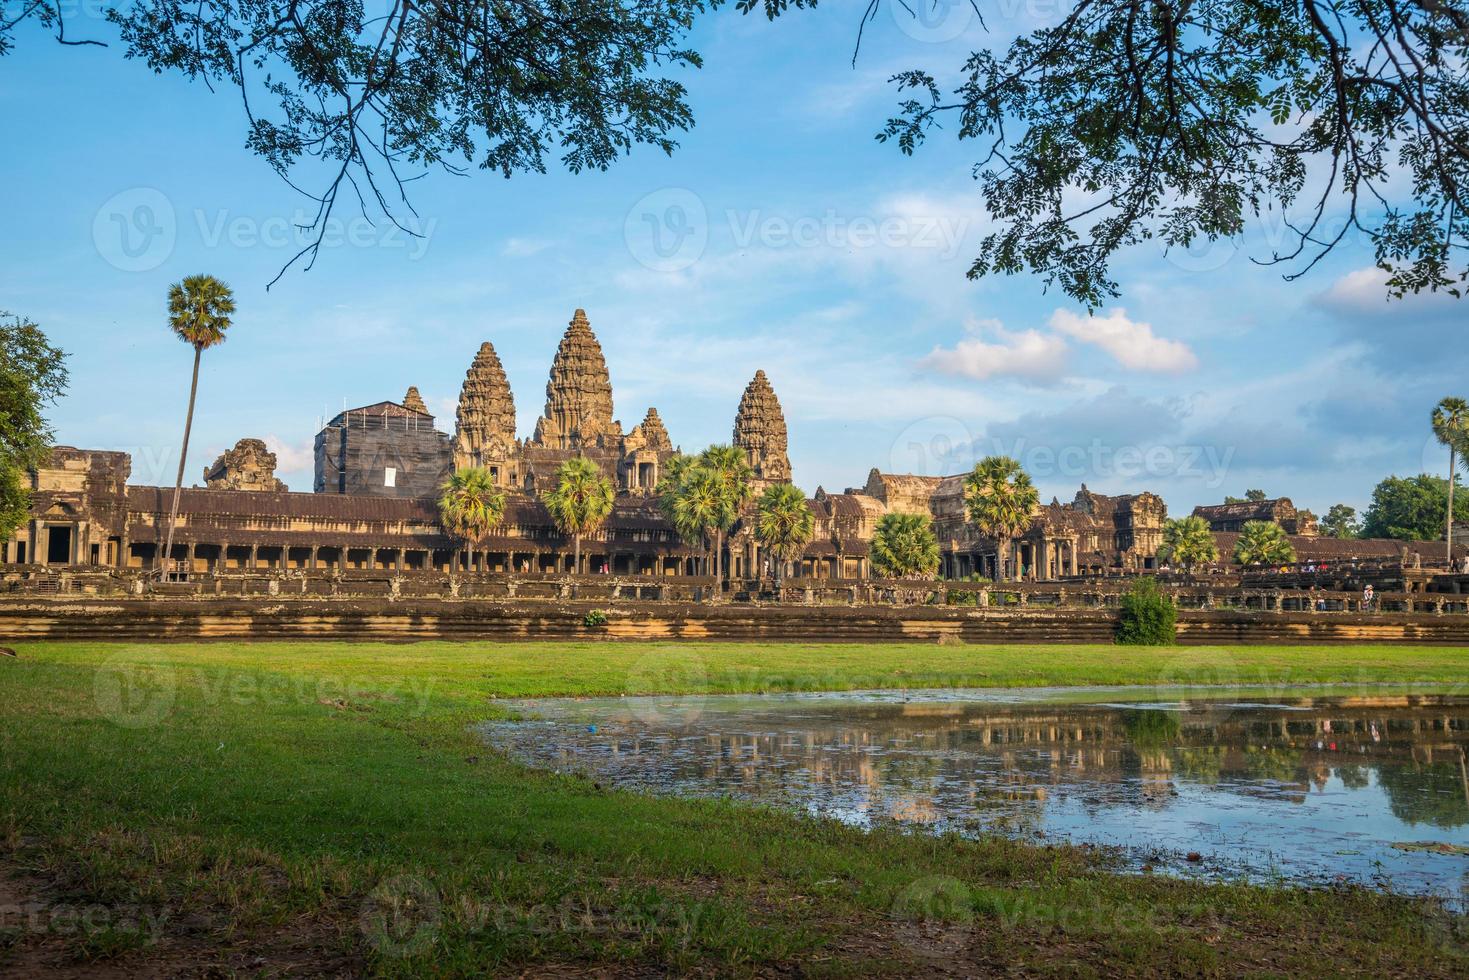 angkor wat est un complexe de temples au cambodge et le plus grand monument religieux du monde. situé dans la province de siem reap au cambodge. photo